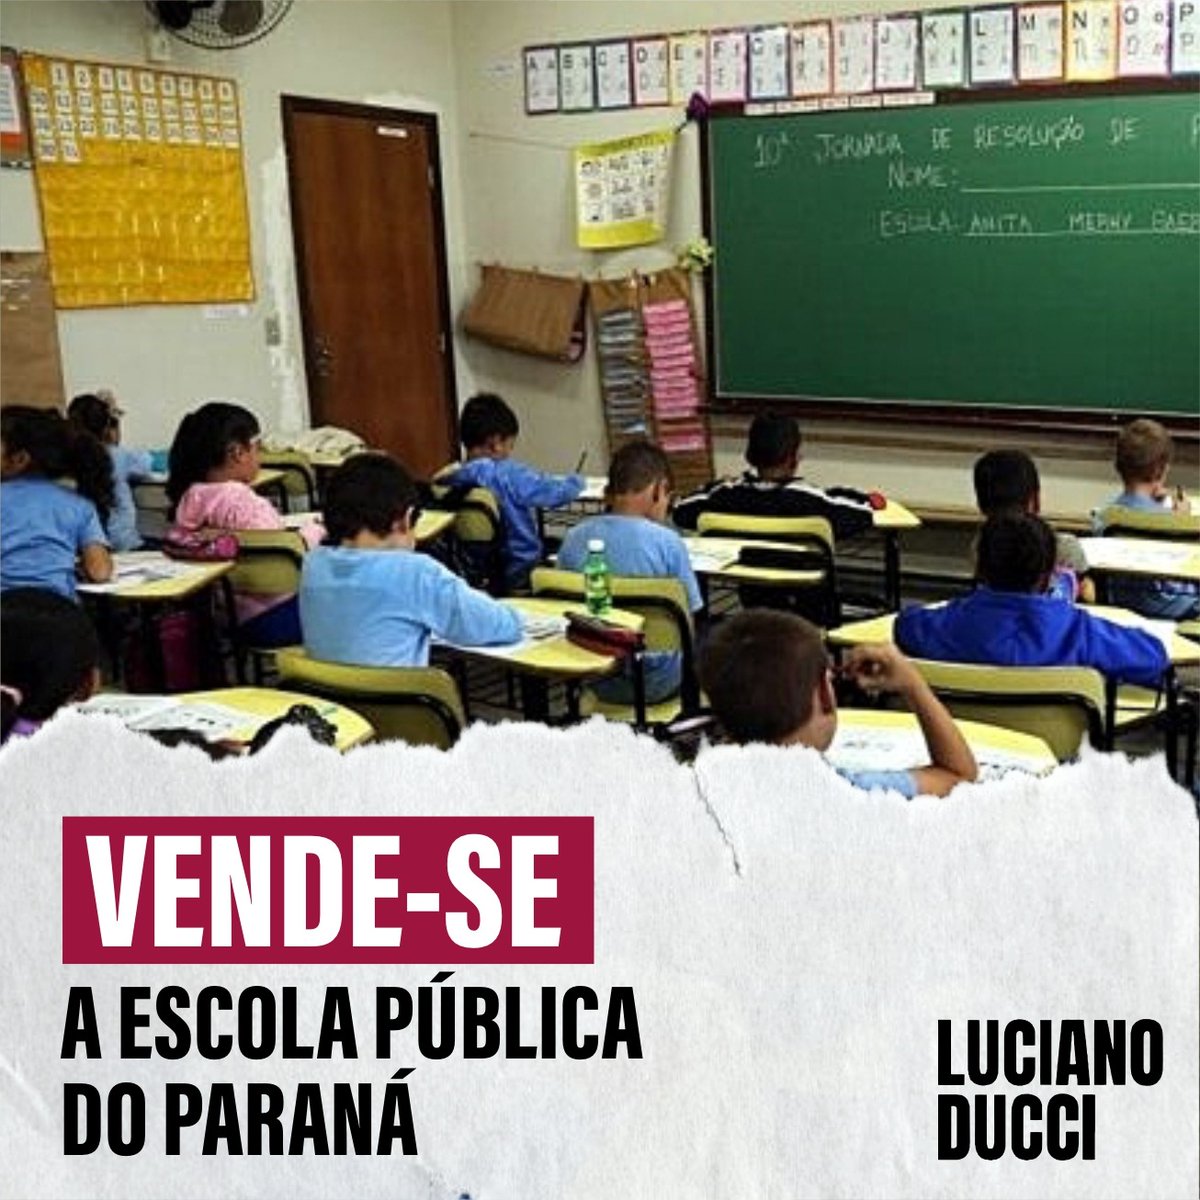 O foco da escola pública tem q ser a educação e não o lucro! Se o Estado não está dando conta de proporcionar ensino com QUALIDADE, é preciso melhorar, investir, não privatizar. O Brasil já teve educação de excelência e pode voltar a ter. Não à privatização das escolas do Paraná!